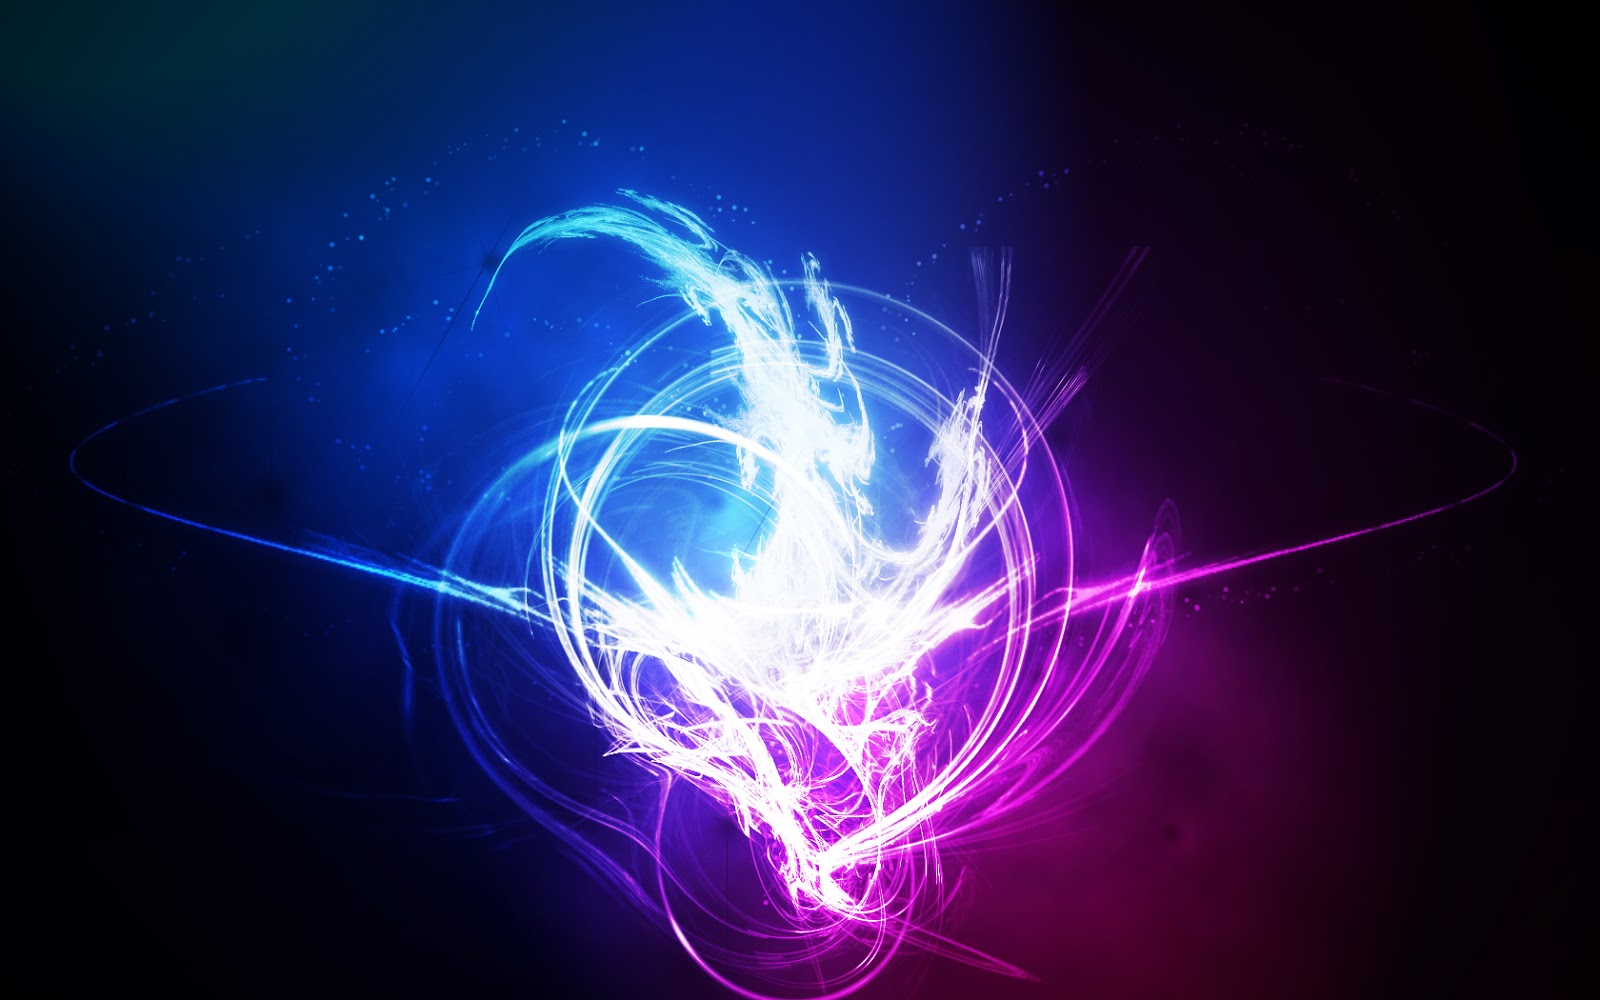 papel tapiz efecto de luz,azul,azul eléctrico,ligero,arte fractal,púrpura